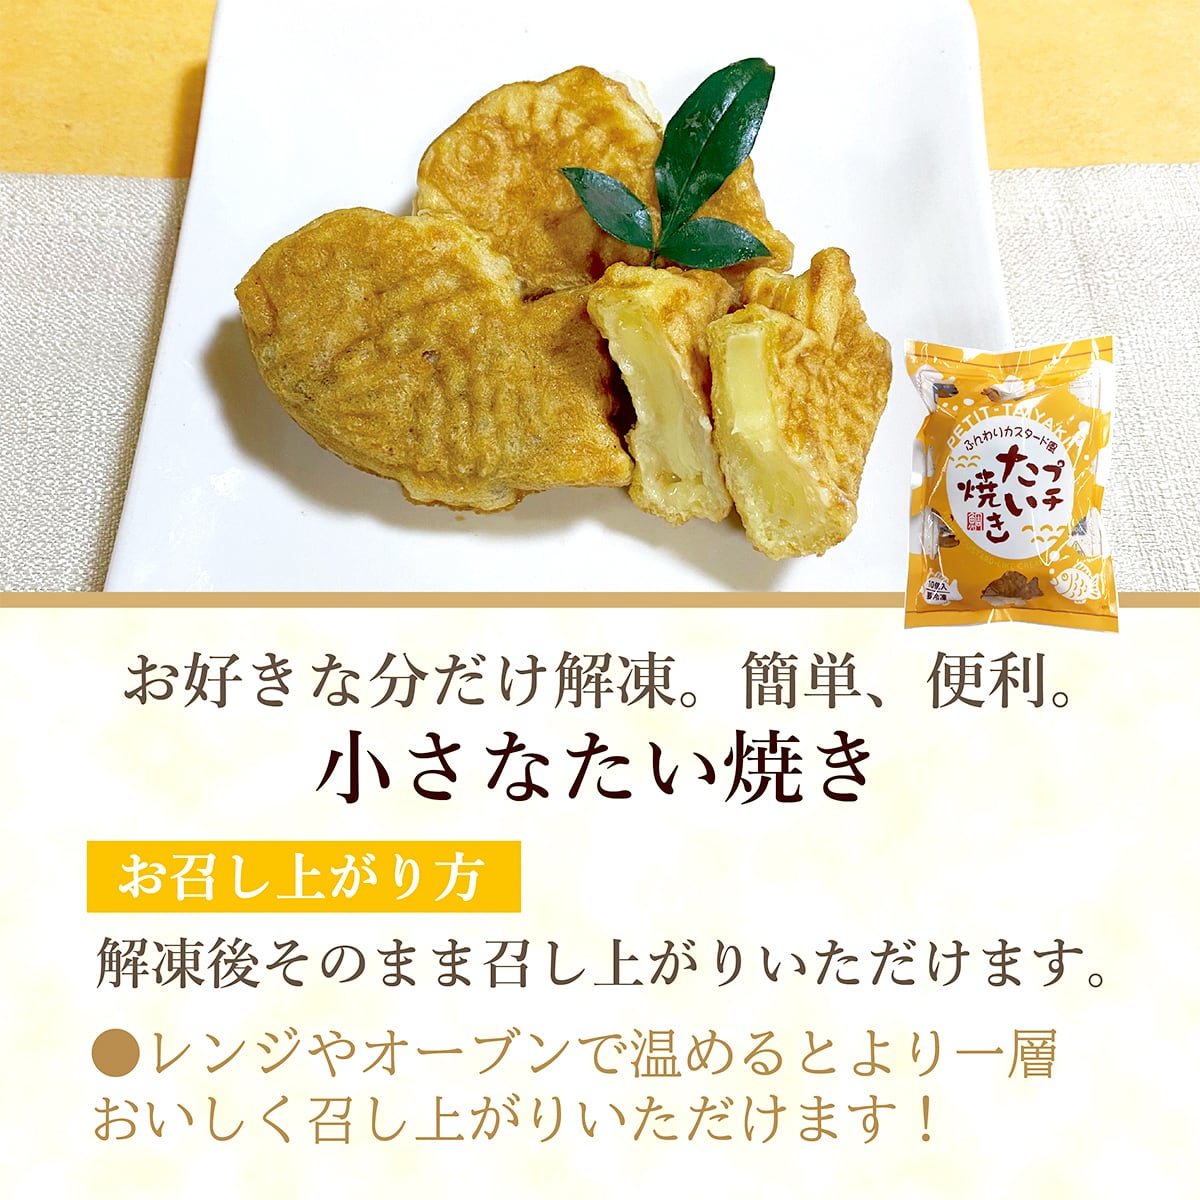 クリームプチたい焼き【冷凍商品】　和スイーツ専門店「タヌマ」